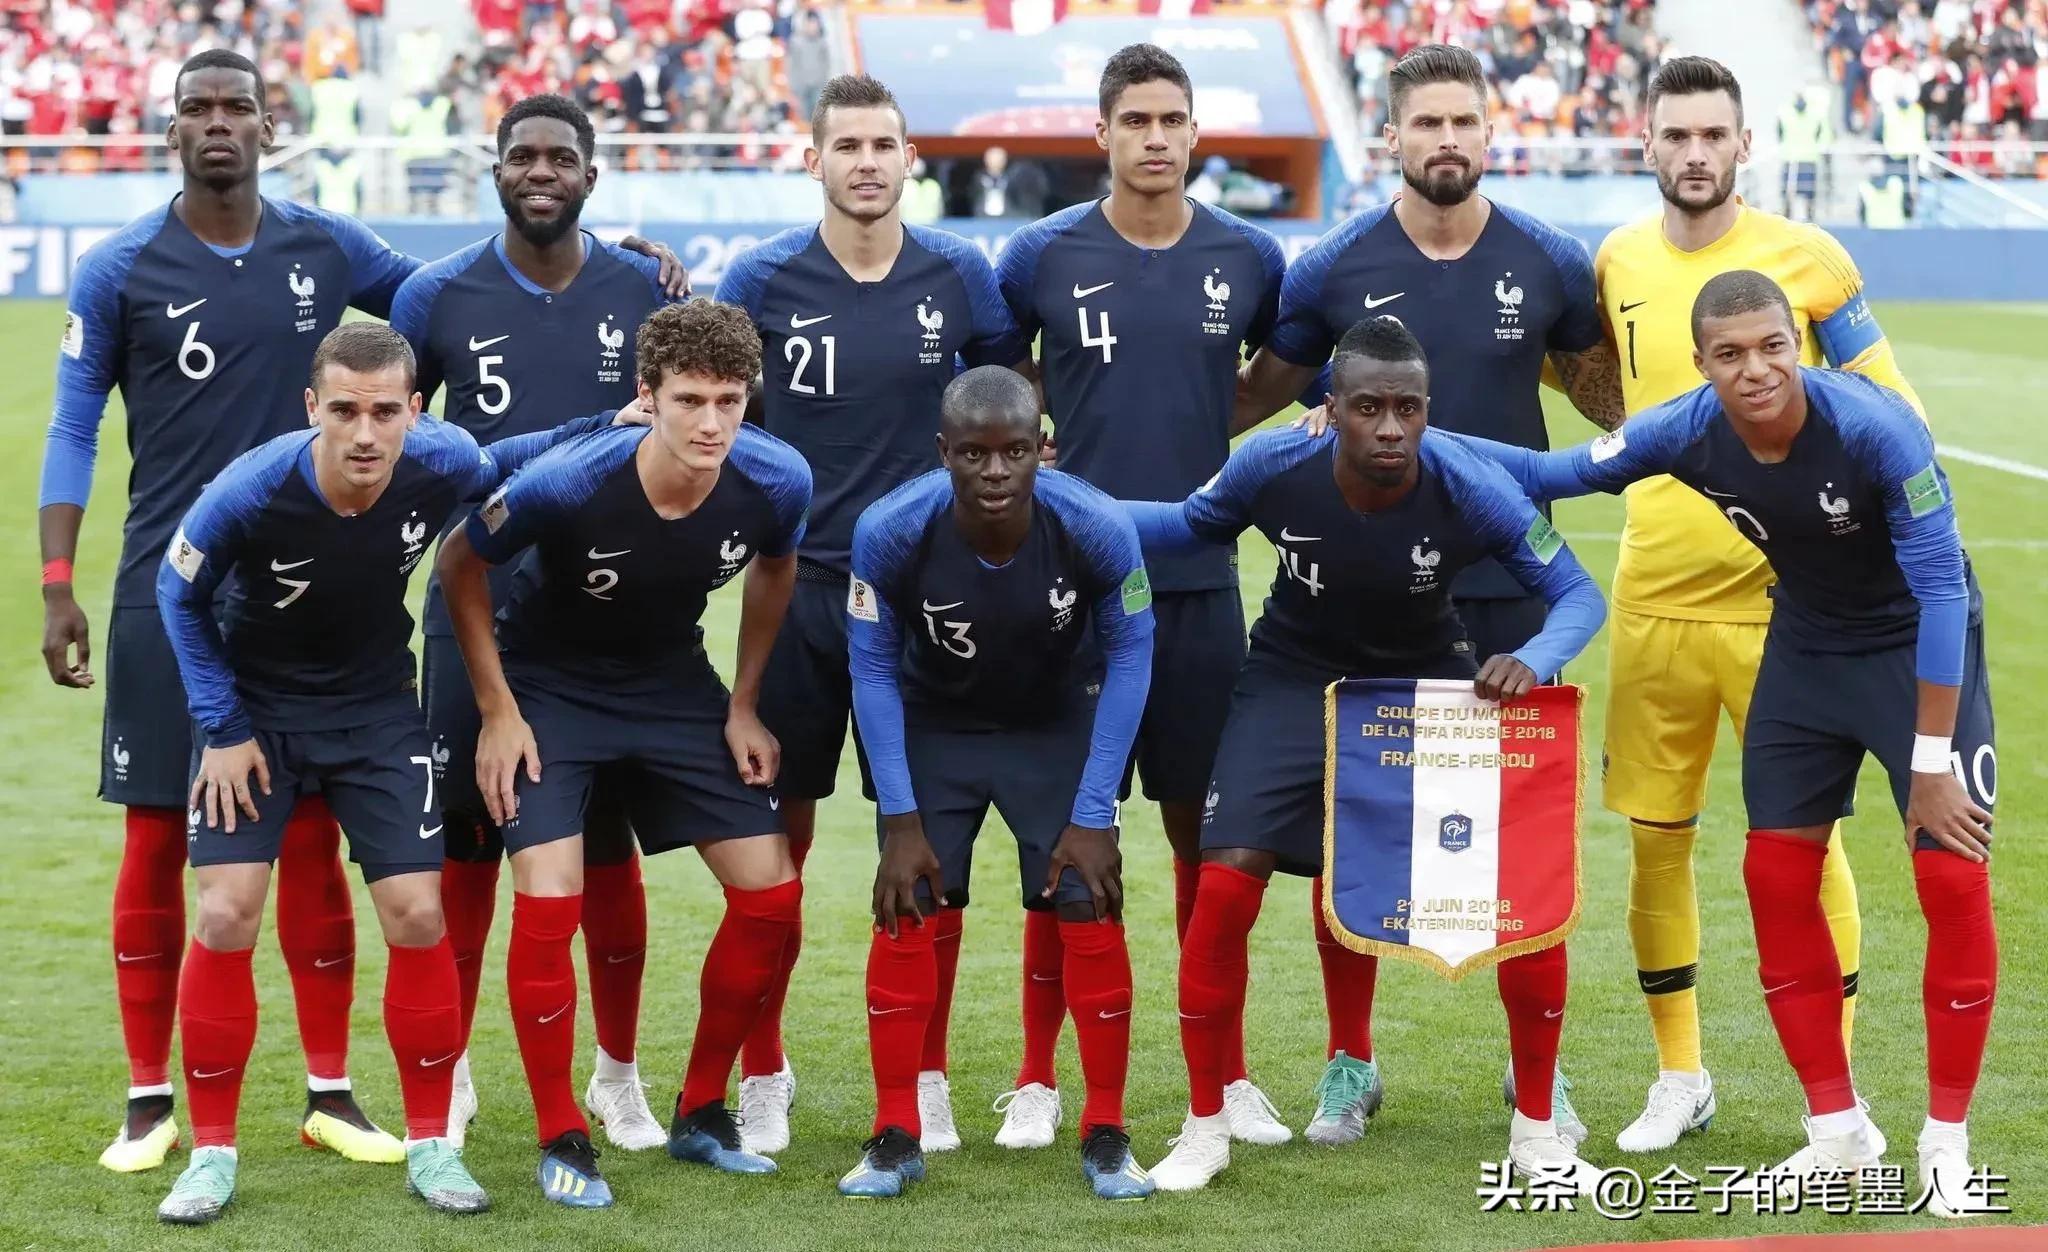 法国队为什么黑人这么多？《50支伟大球队的传奇故事》里有答案